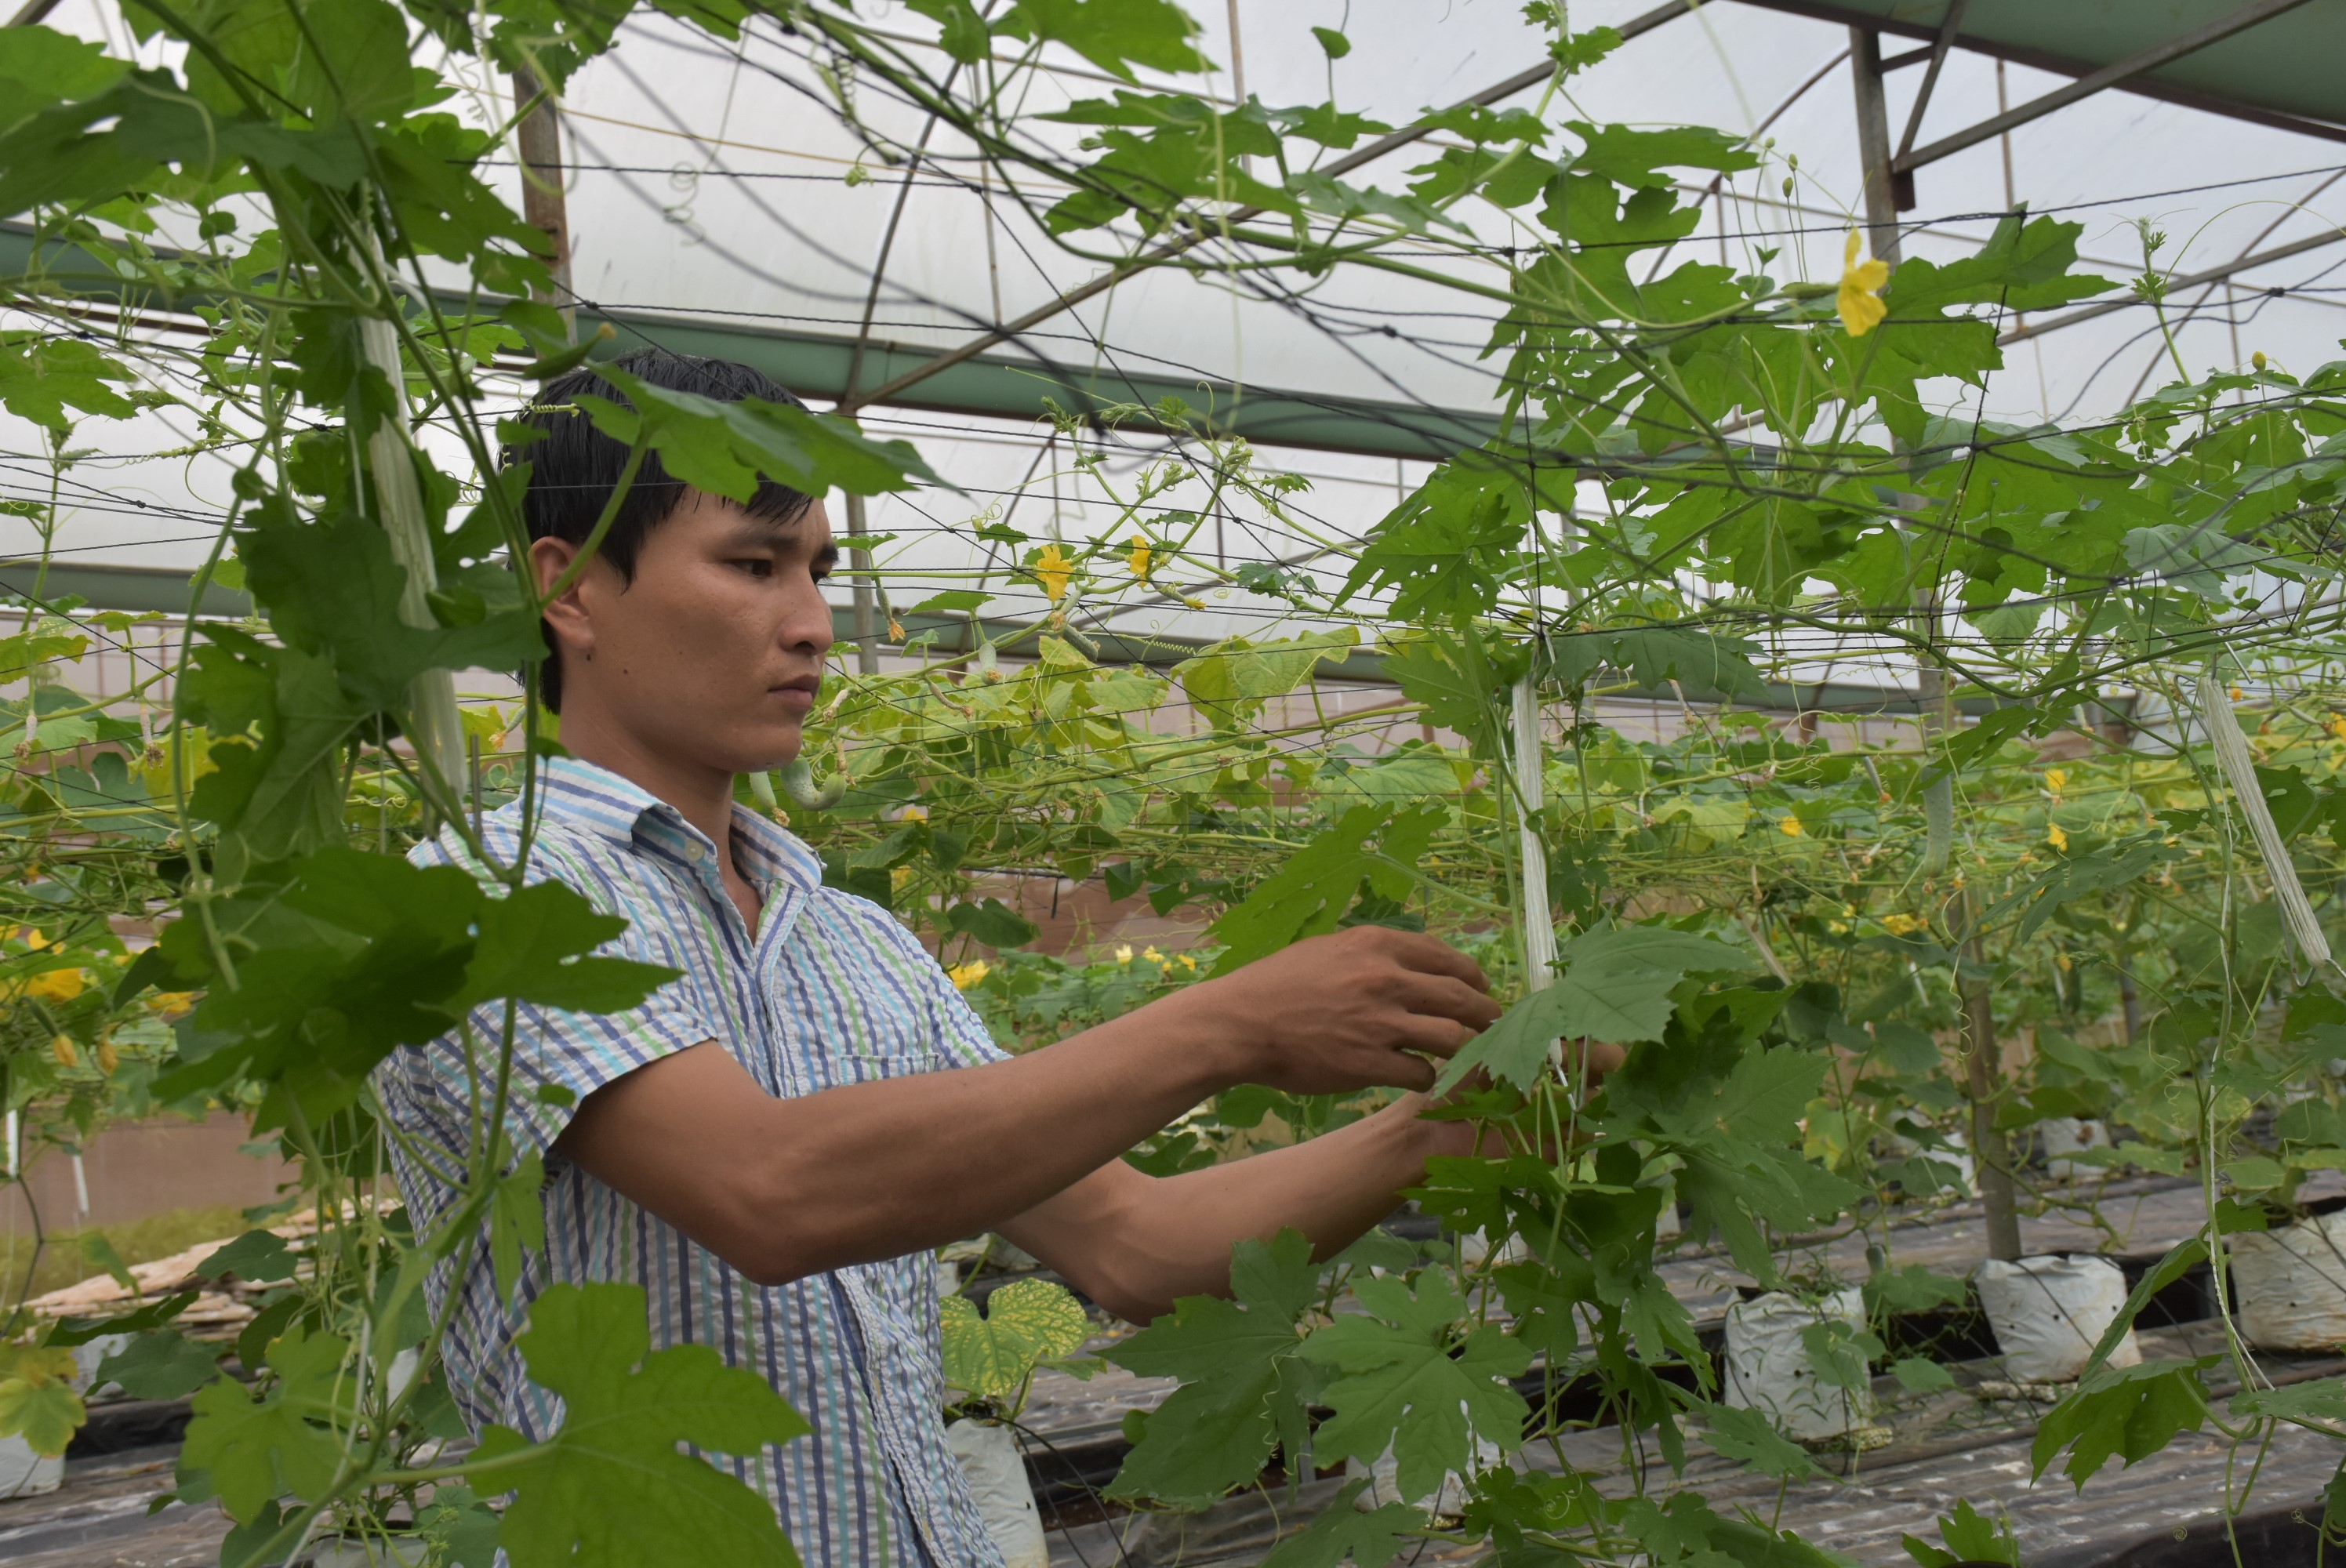 Nông nghiệp công nghệ cao được xác định là 1 trong 4 trụ cột kinh tế của tỉnh. Trong ảnh: Khu trồng rau công nghệ cao của cơ sở Vương Huy, xã Xà Bàng, huyện Châu Đức.